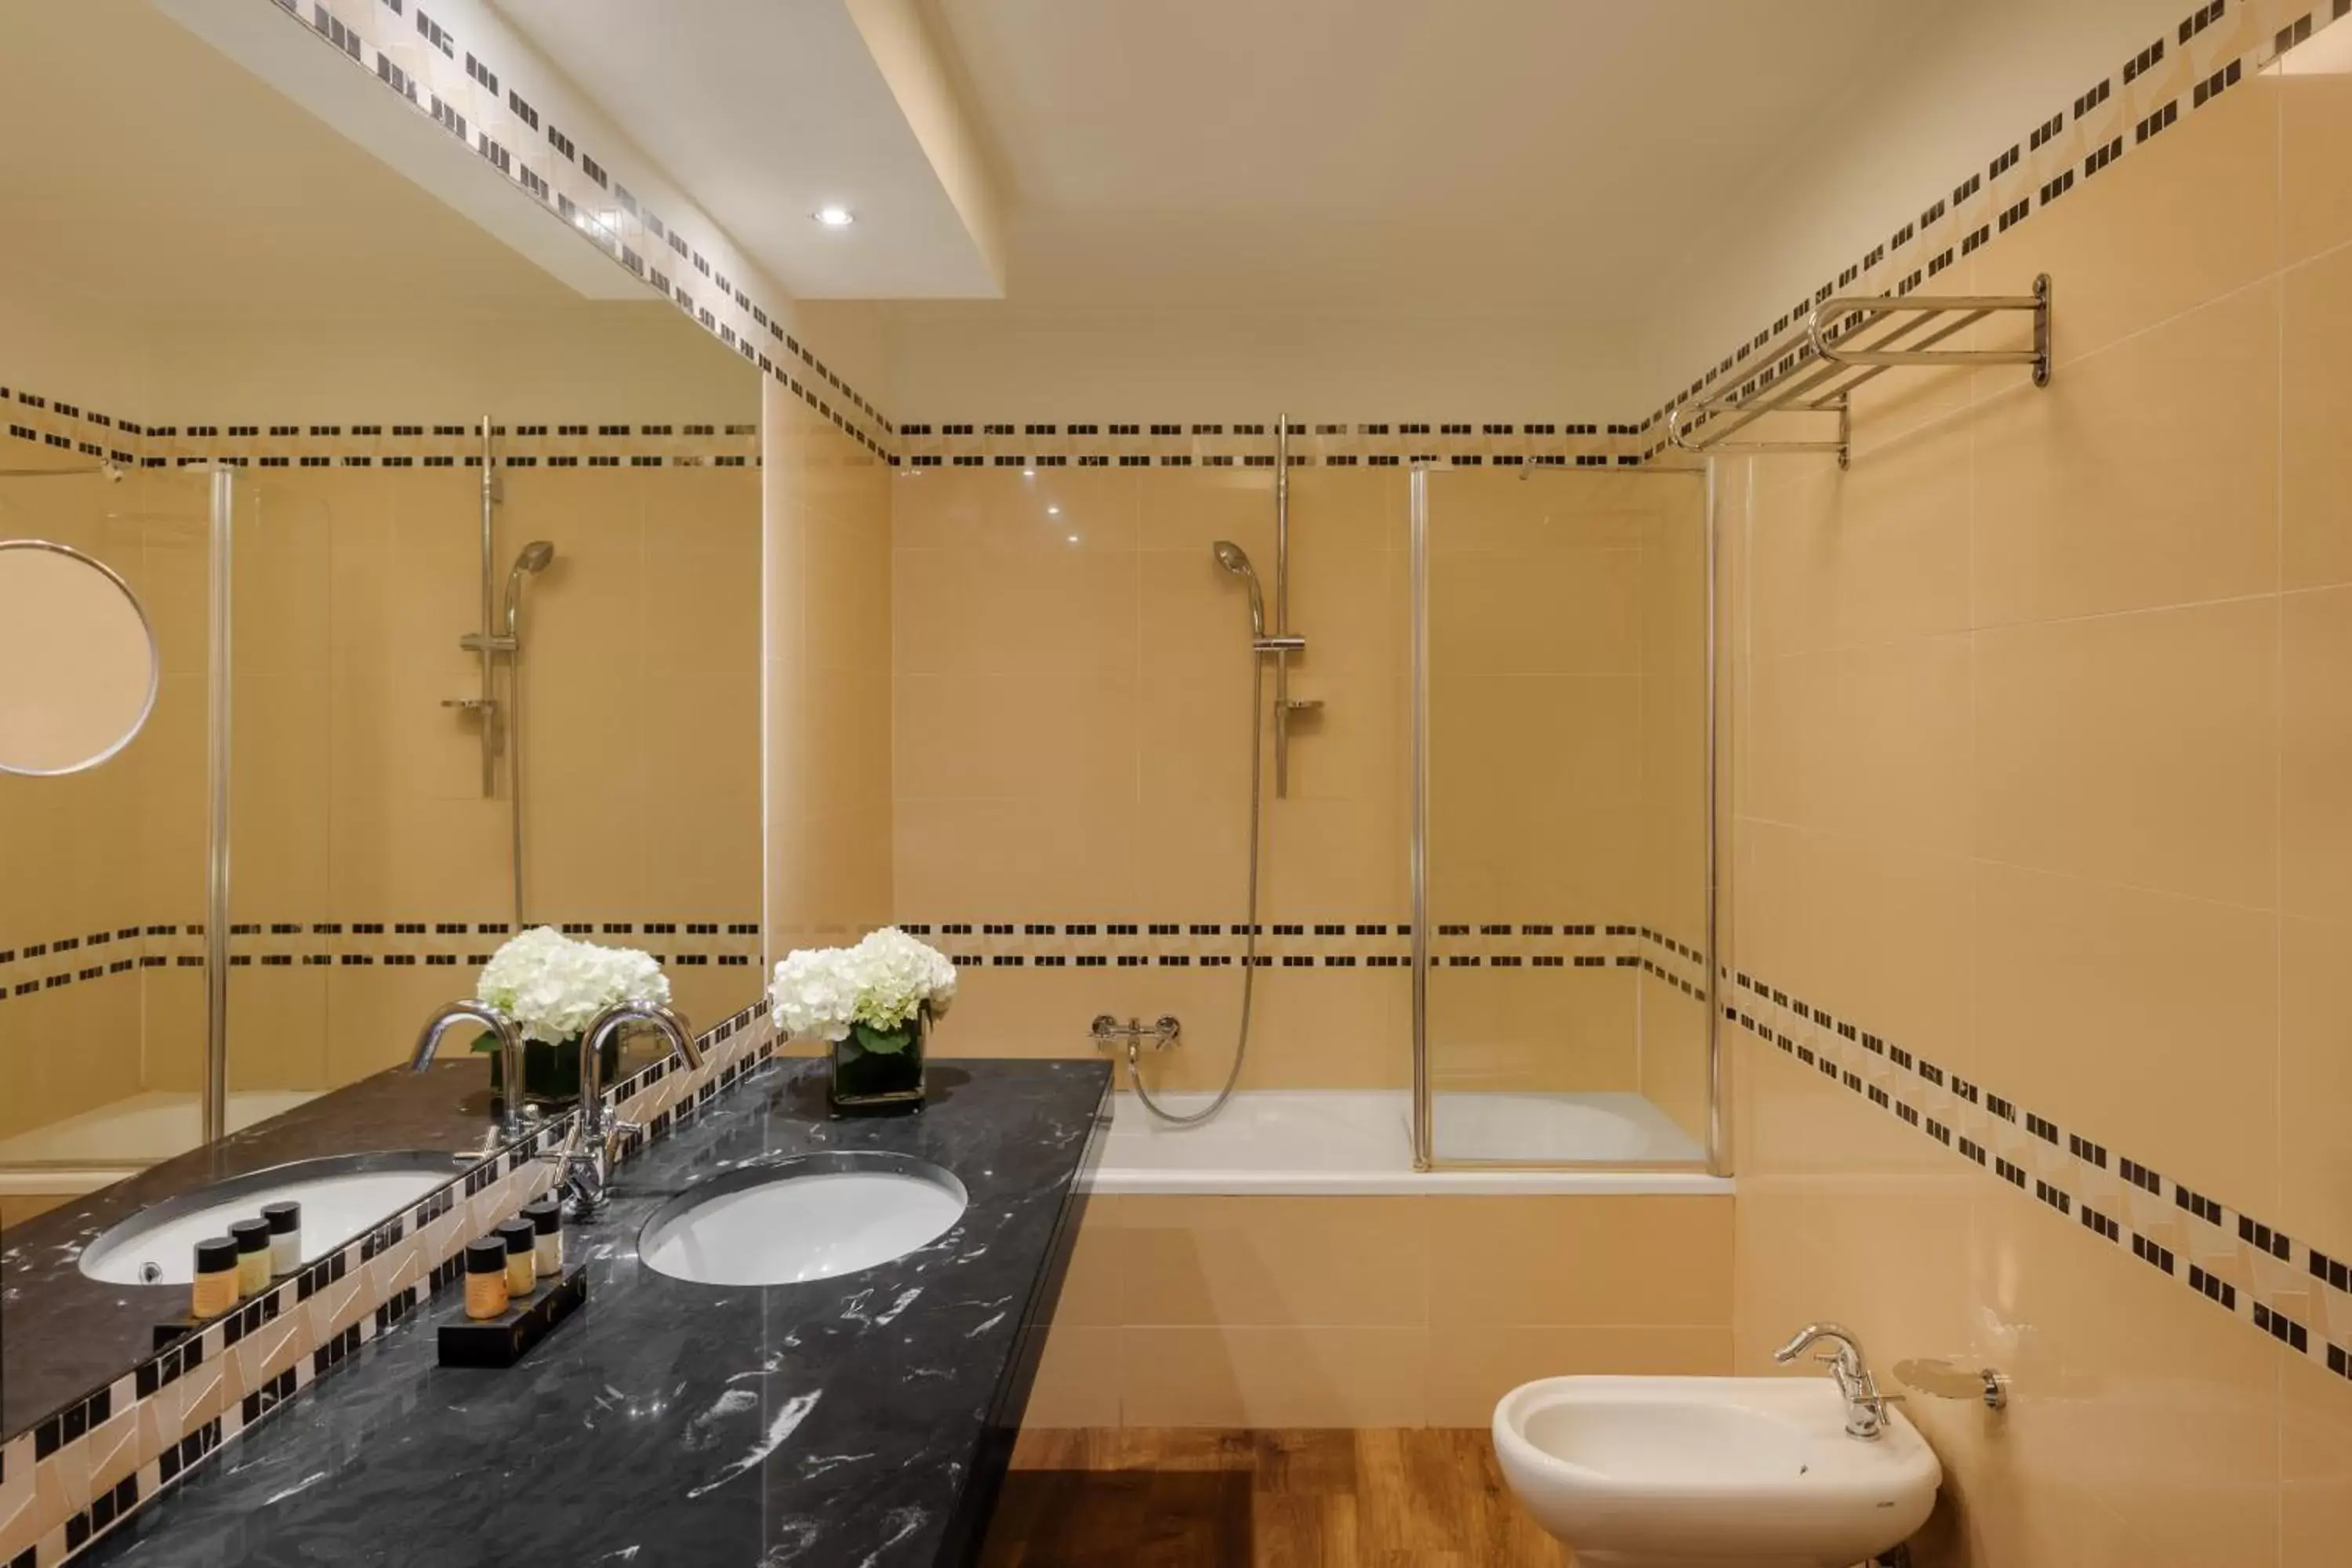 Bathroom in Hotel Dei Cavalieri Milano Duomo